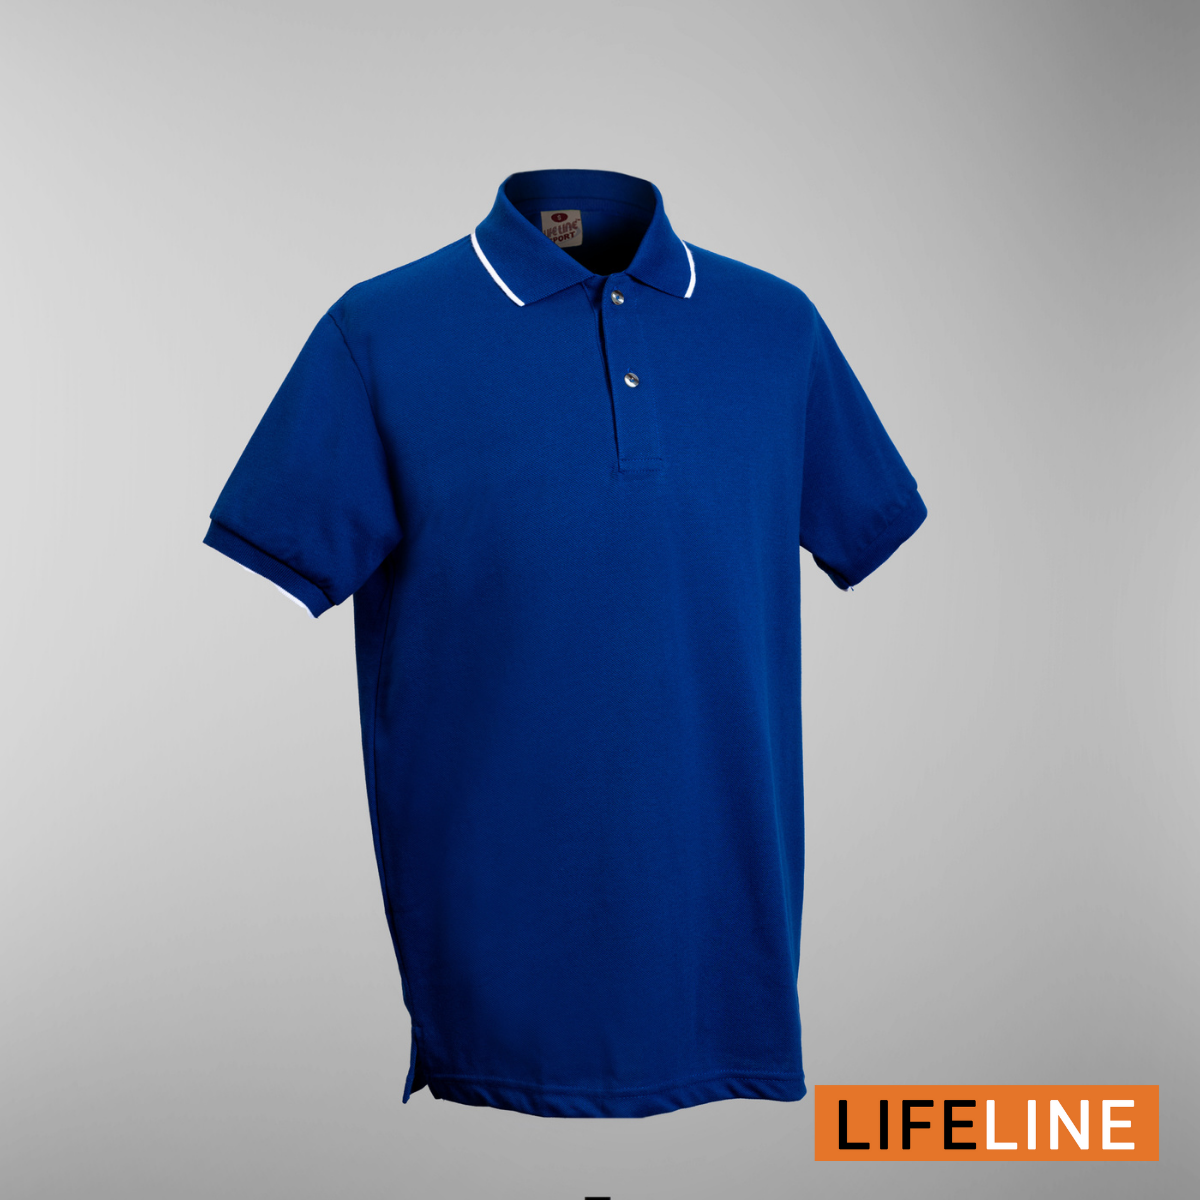 Lifeline Line Polo Shirt (Blue Pea)